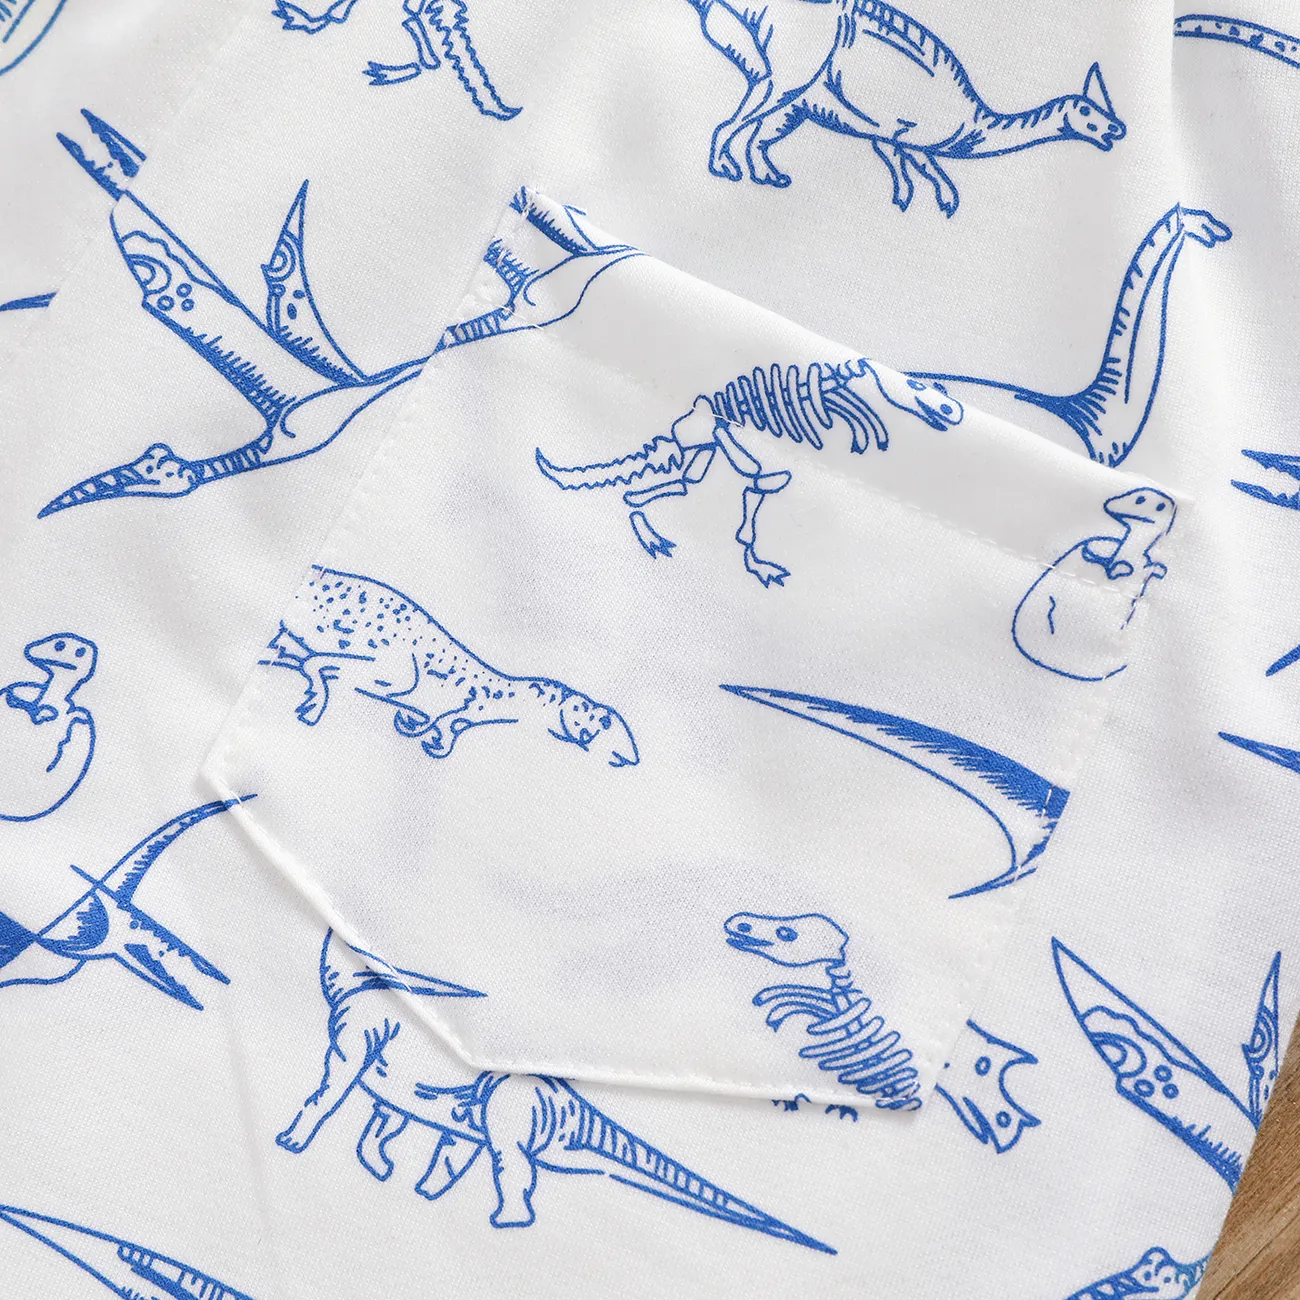 Bestickte, elastische Shorts mit Aufnäher für Kinder und Jungen mit Tier-Dinosaurier-Aufdruck weiß big image 1